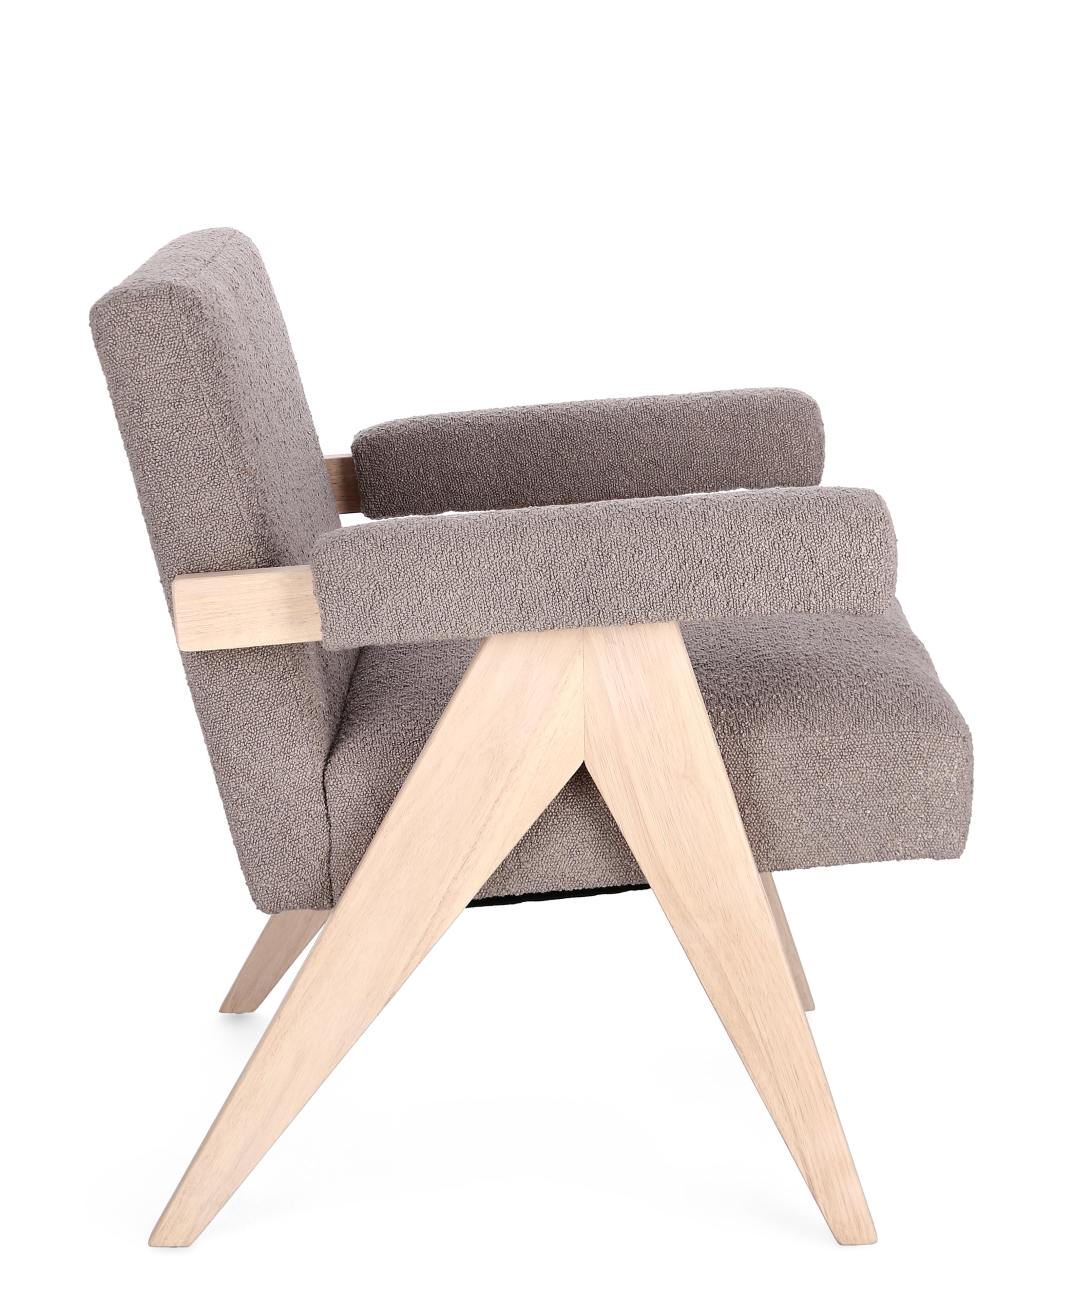 Der Sessel Faiza überzeugt mit seinem modernen Stil. Gefertigt wurde er aus Stoff, welcher einen grauen Farbton besitzt. Das Gestell ist aus Kautschuk und hat eine natürliche Farbe. Der Sessel besitzt eine Sitzhöhe von 46 cm.